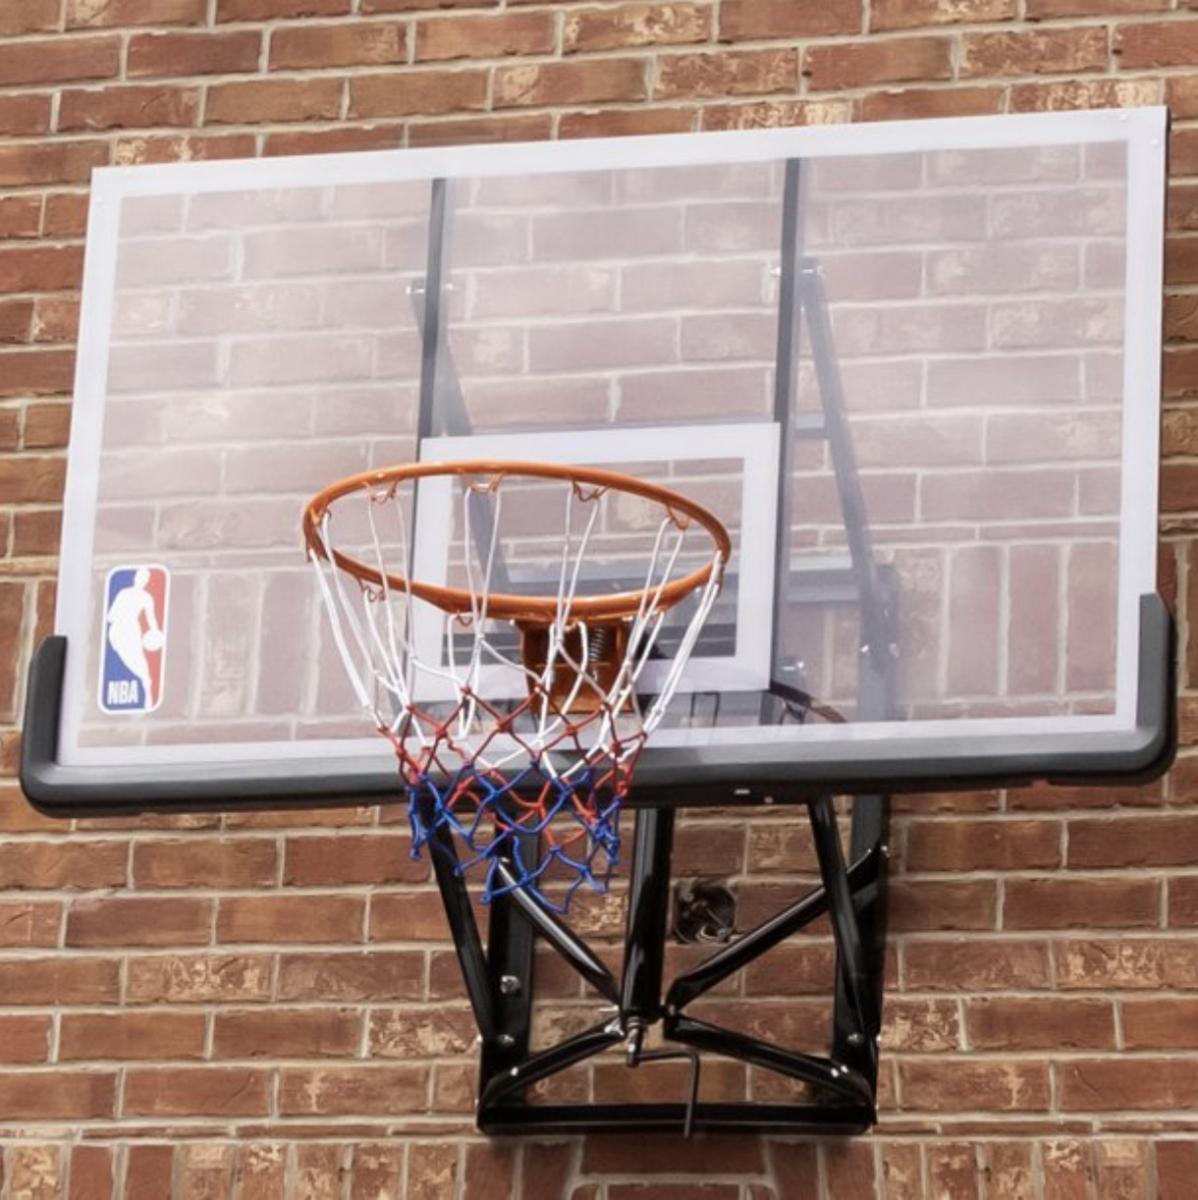 NBA basketball hoop